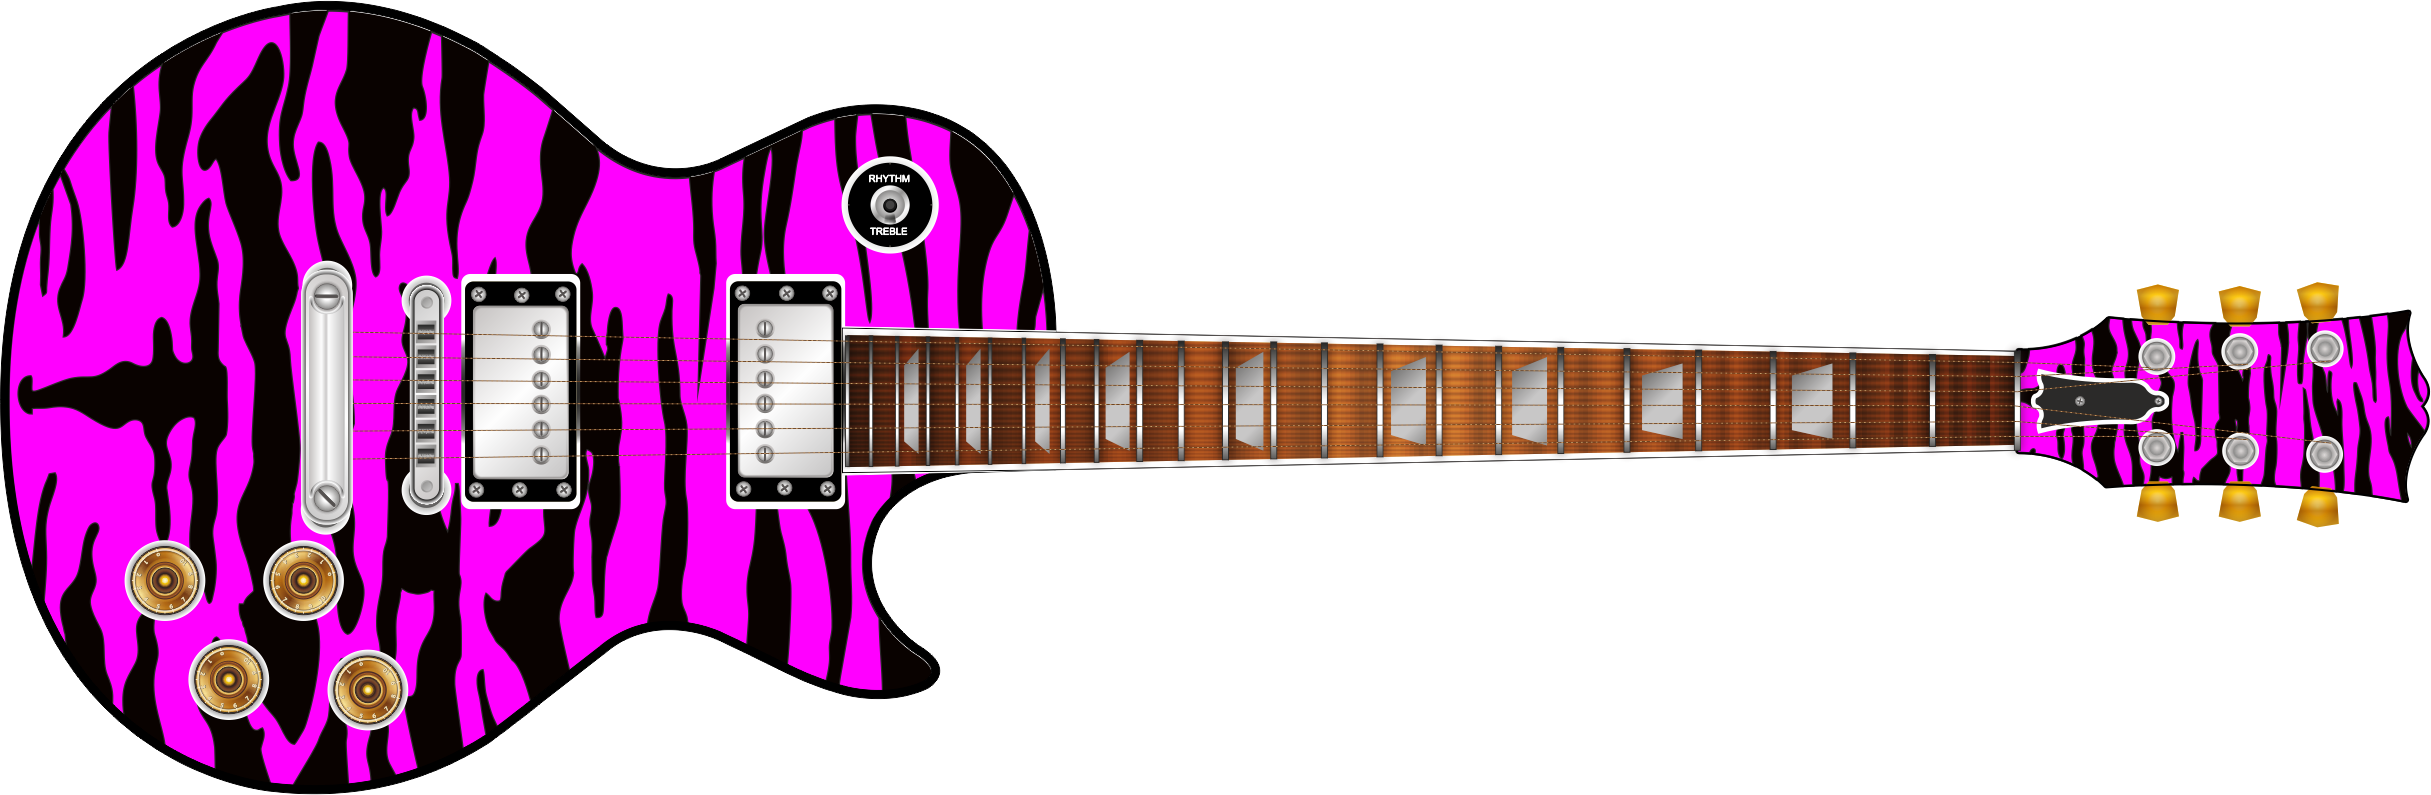 Pink Tiger Guitar Wrap Skin - Tiger (2431x795)